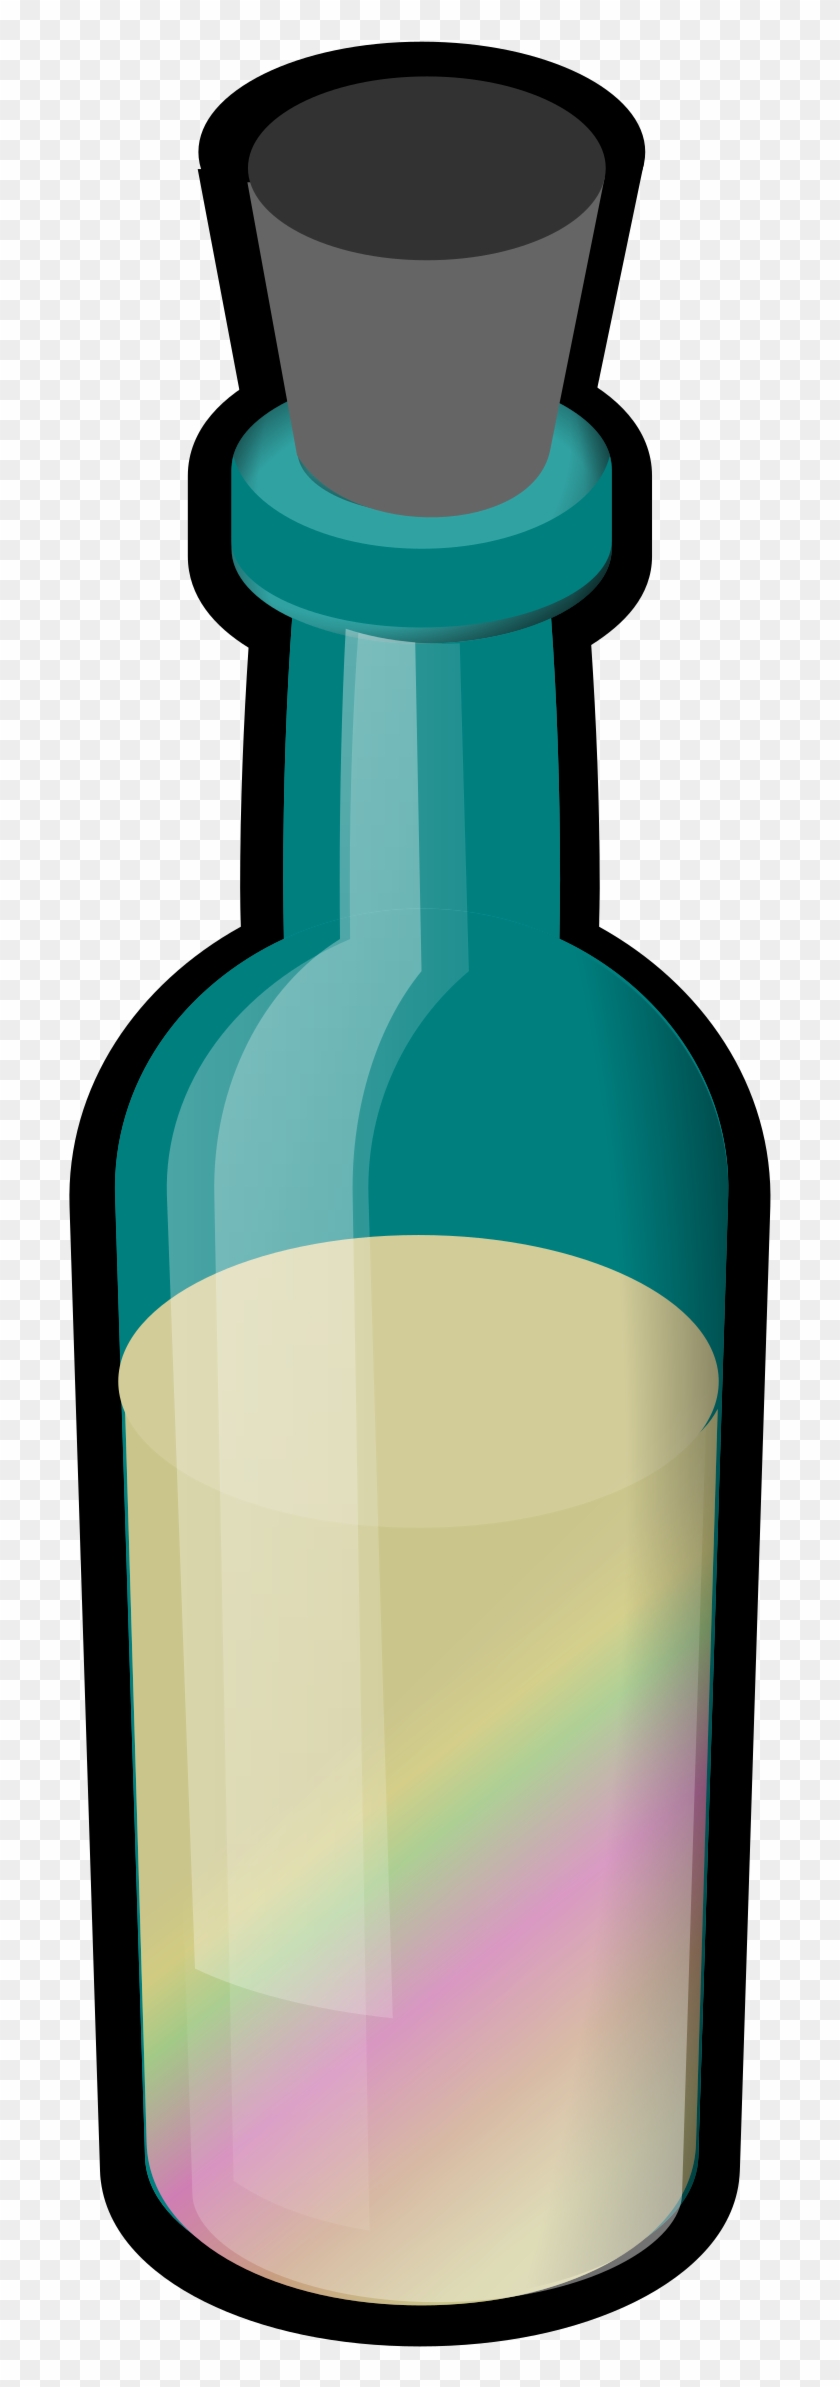 Clipart - Poison Bottle Png #279560